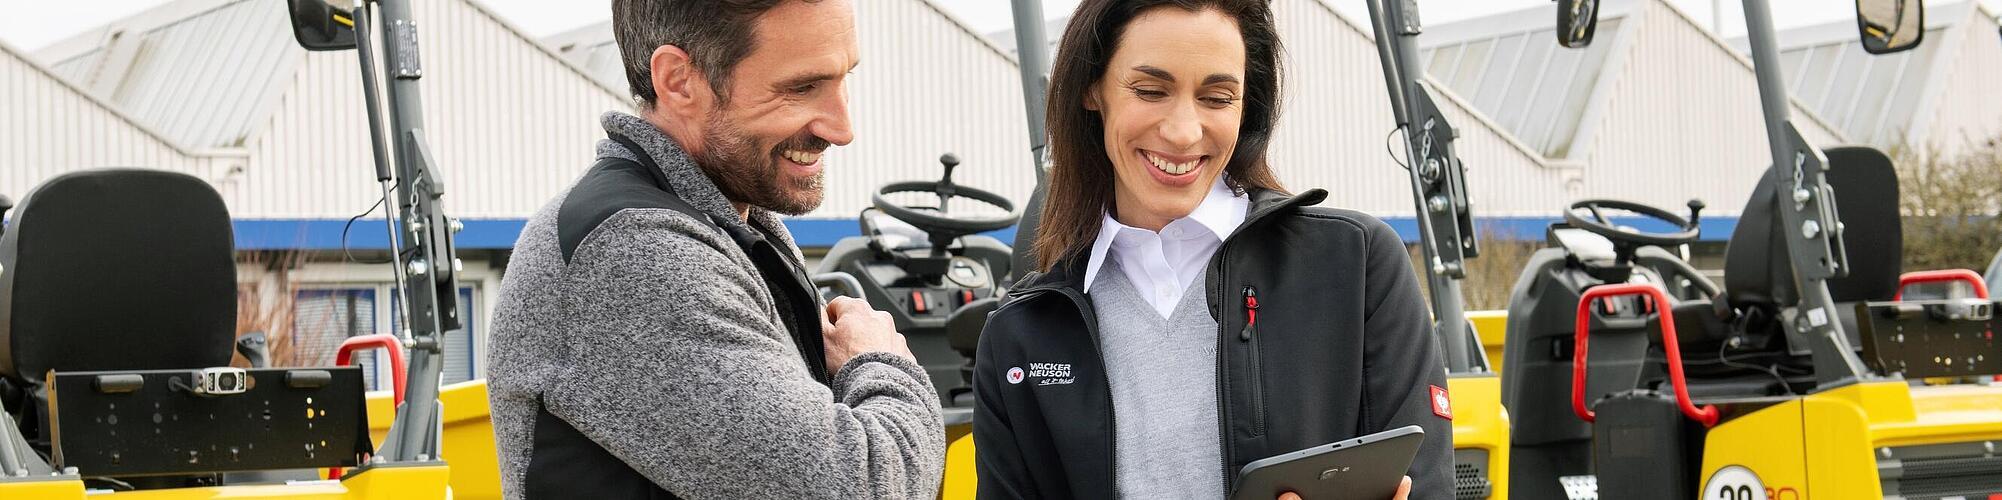 Una sonriente empleada de Wacker Neuson con una tableta asesora a un cliente sonriente frente a las máquinas para la construcción de Wacker Neuson.